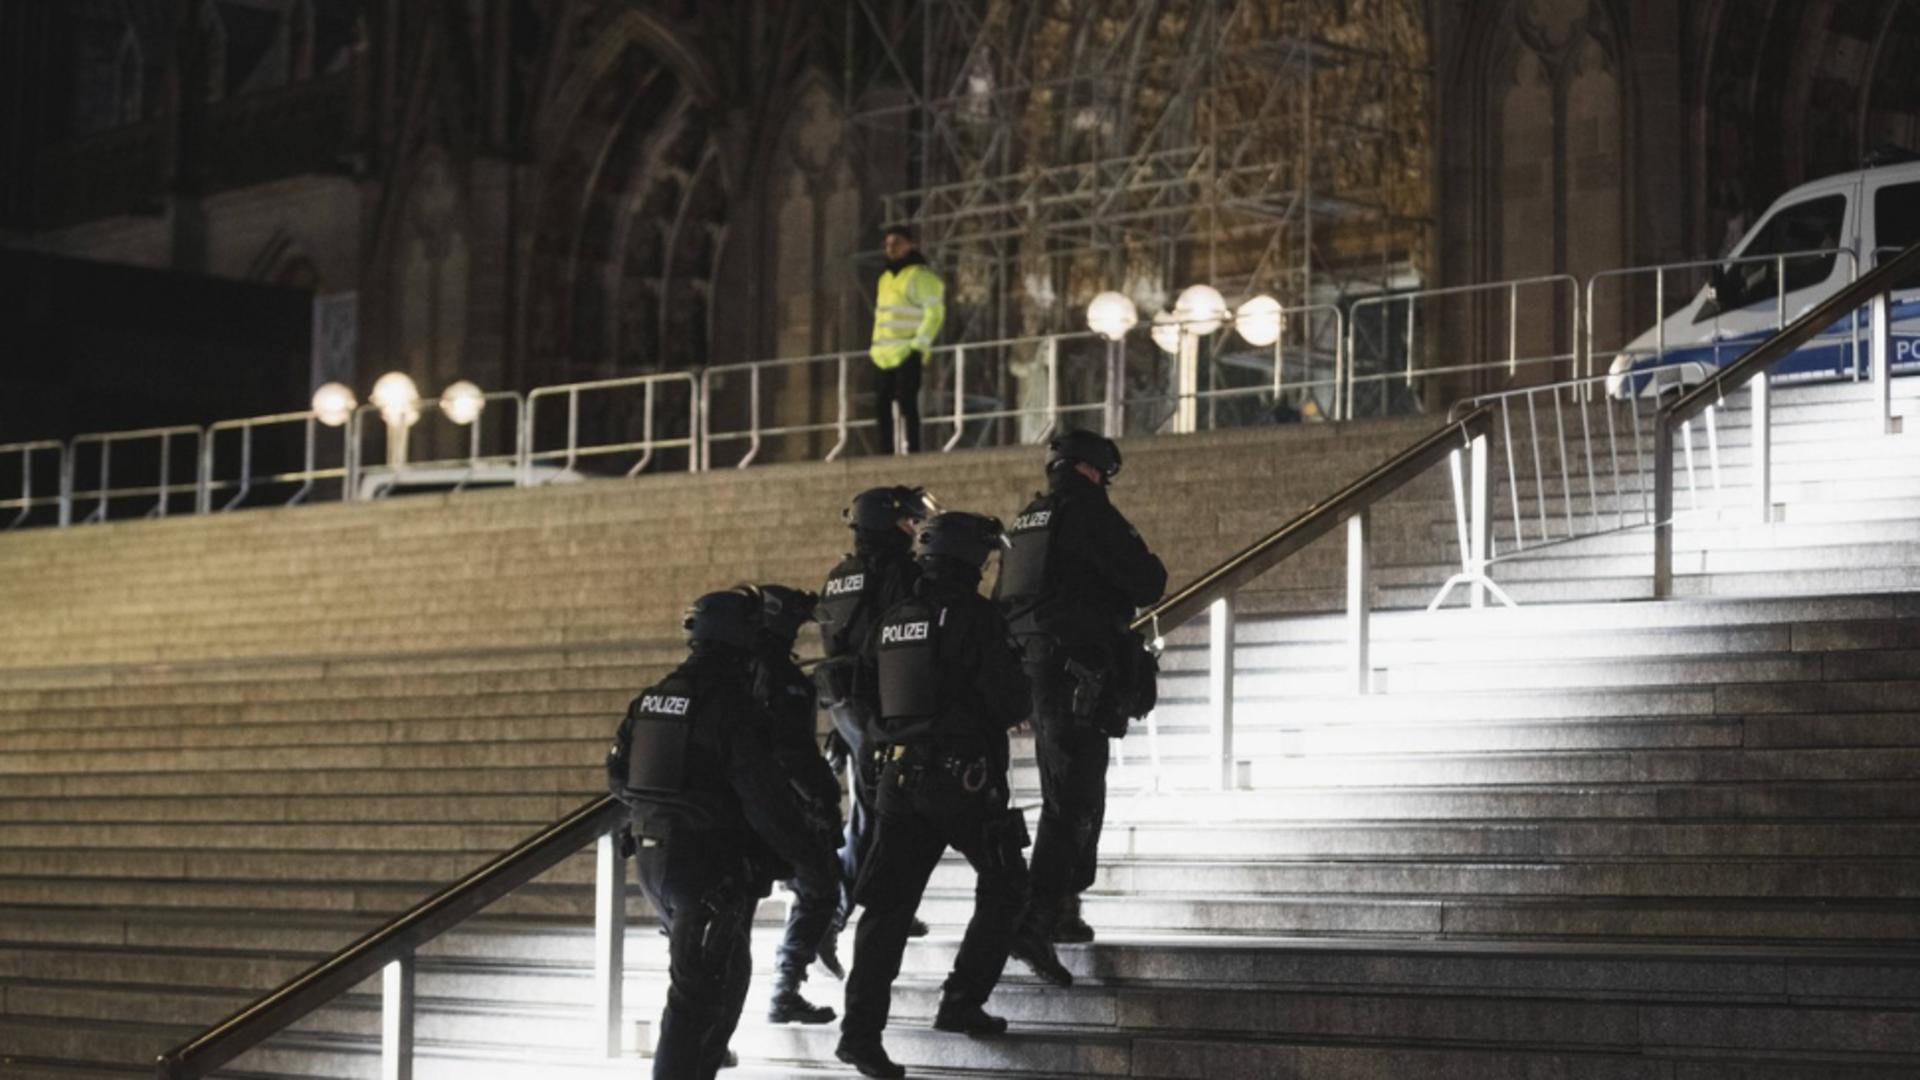 Plan de atac terorist asupra catedralei din Koln în seara de Anul Nou, dejucat de poliția germană. Foto/Profimedia